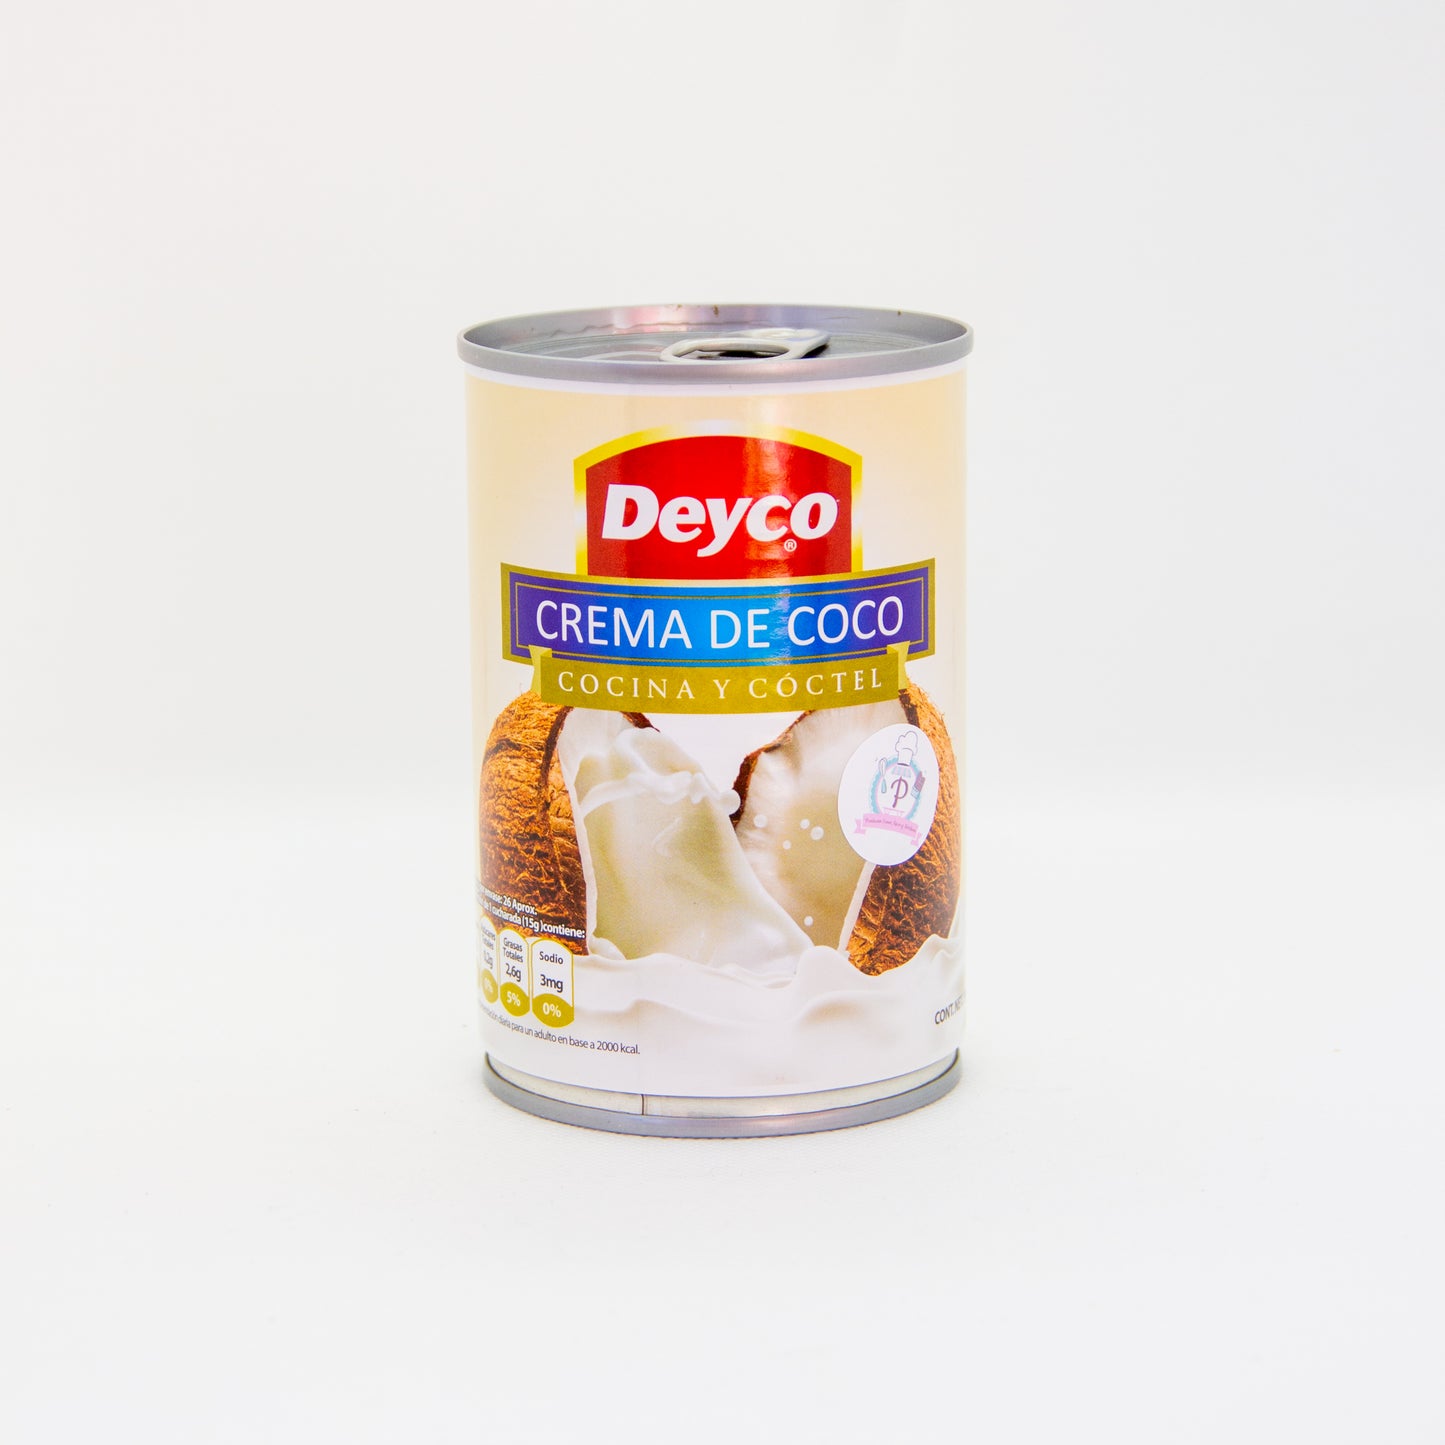 Crema de coco "Deyco" - 400gr